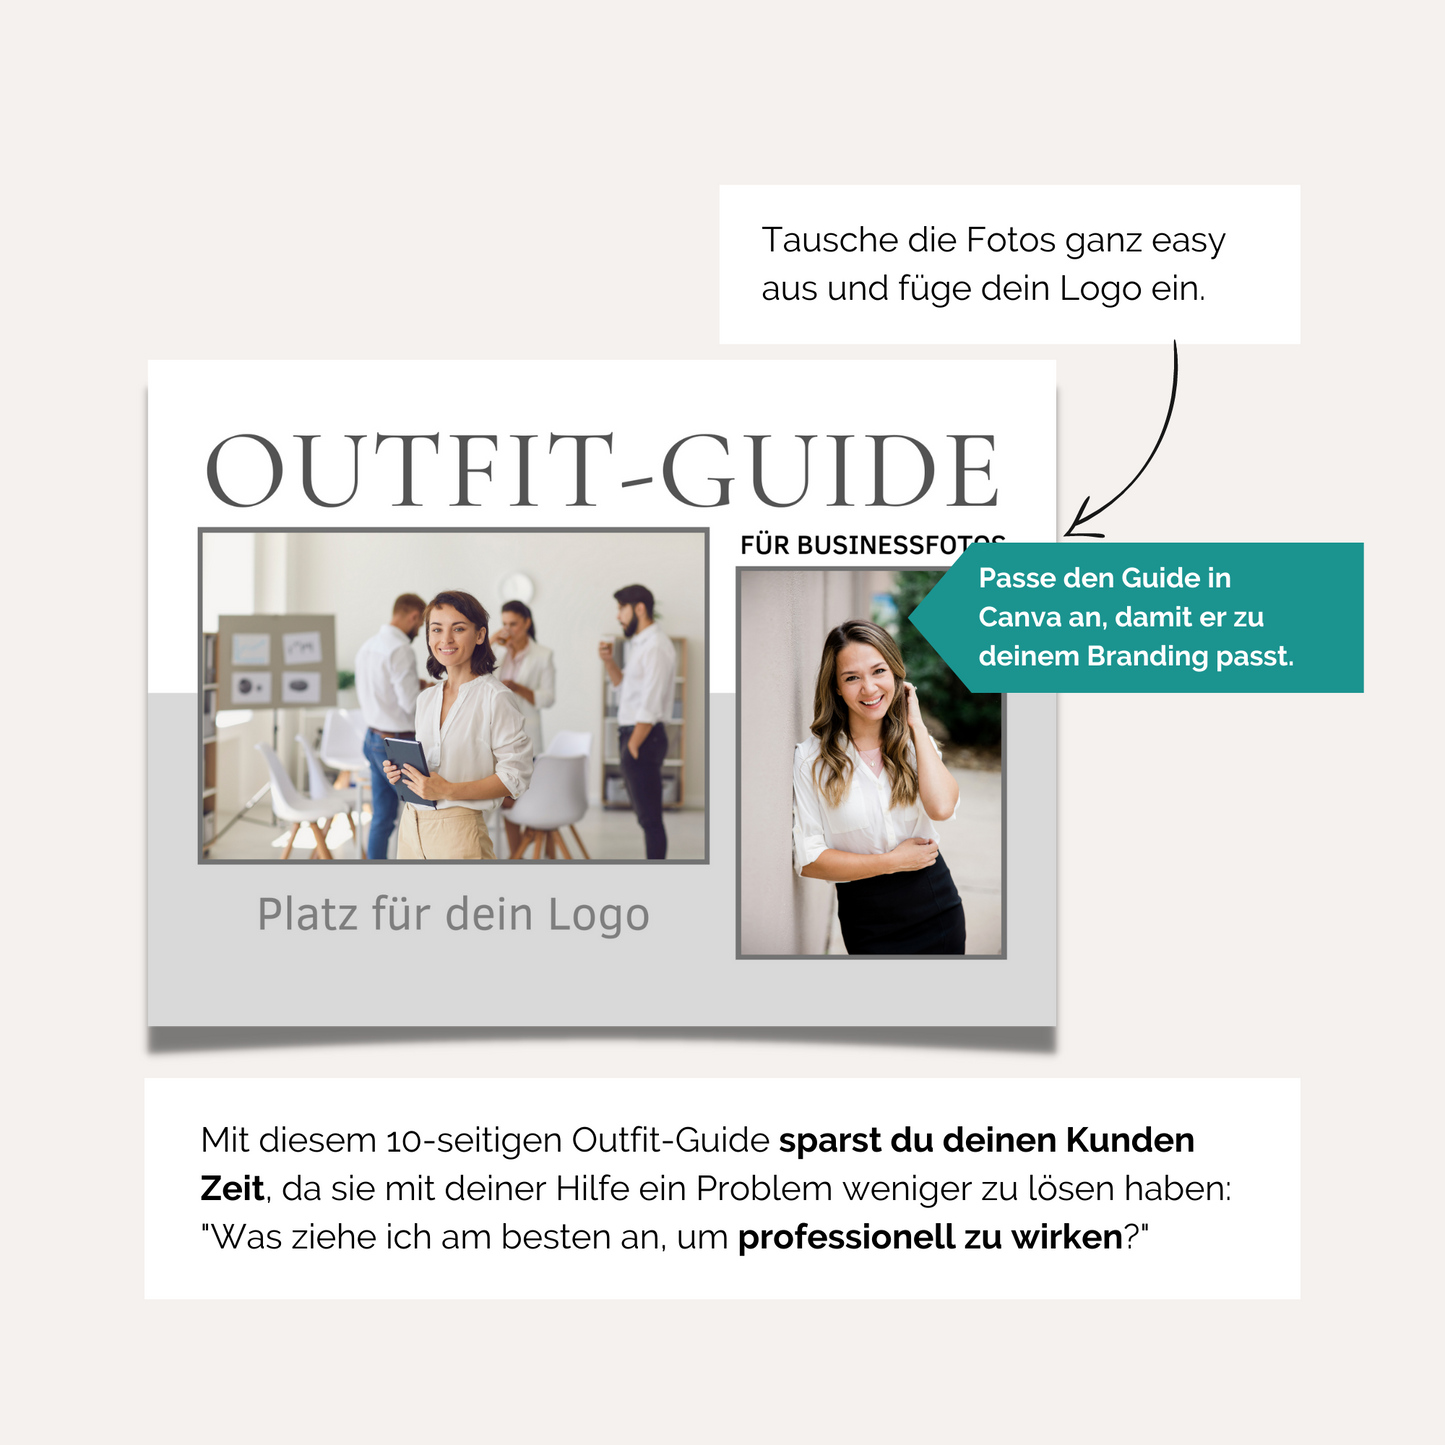 10-seitiger Outfit-Guide für Business-Fotografen. Vorlage für Canva.